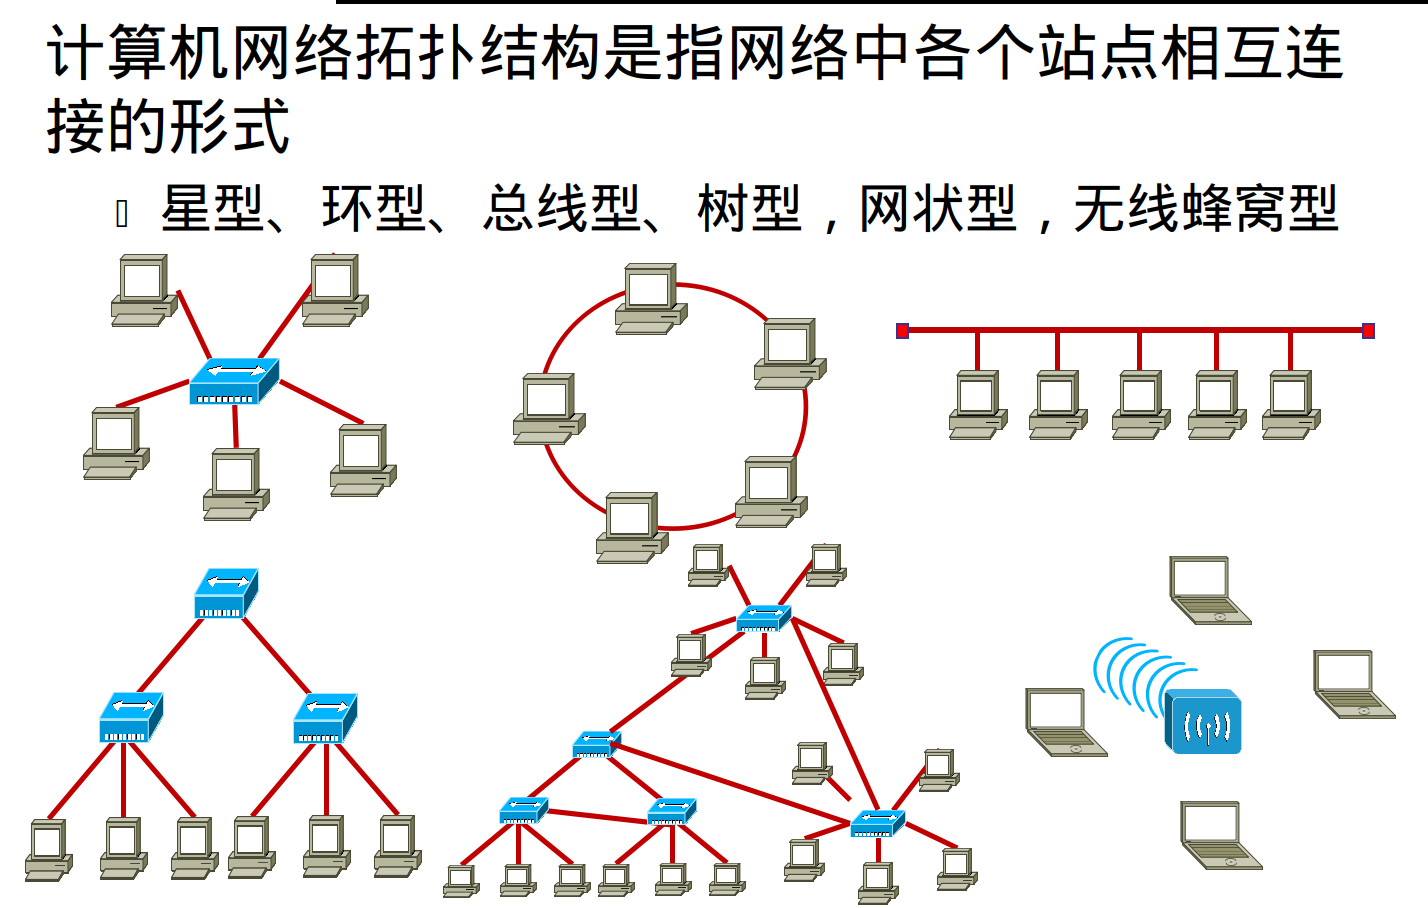 1,计算机网络拓扑结构中,若每一个结点和网中其他任何结点均有链路